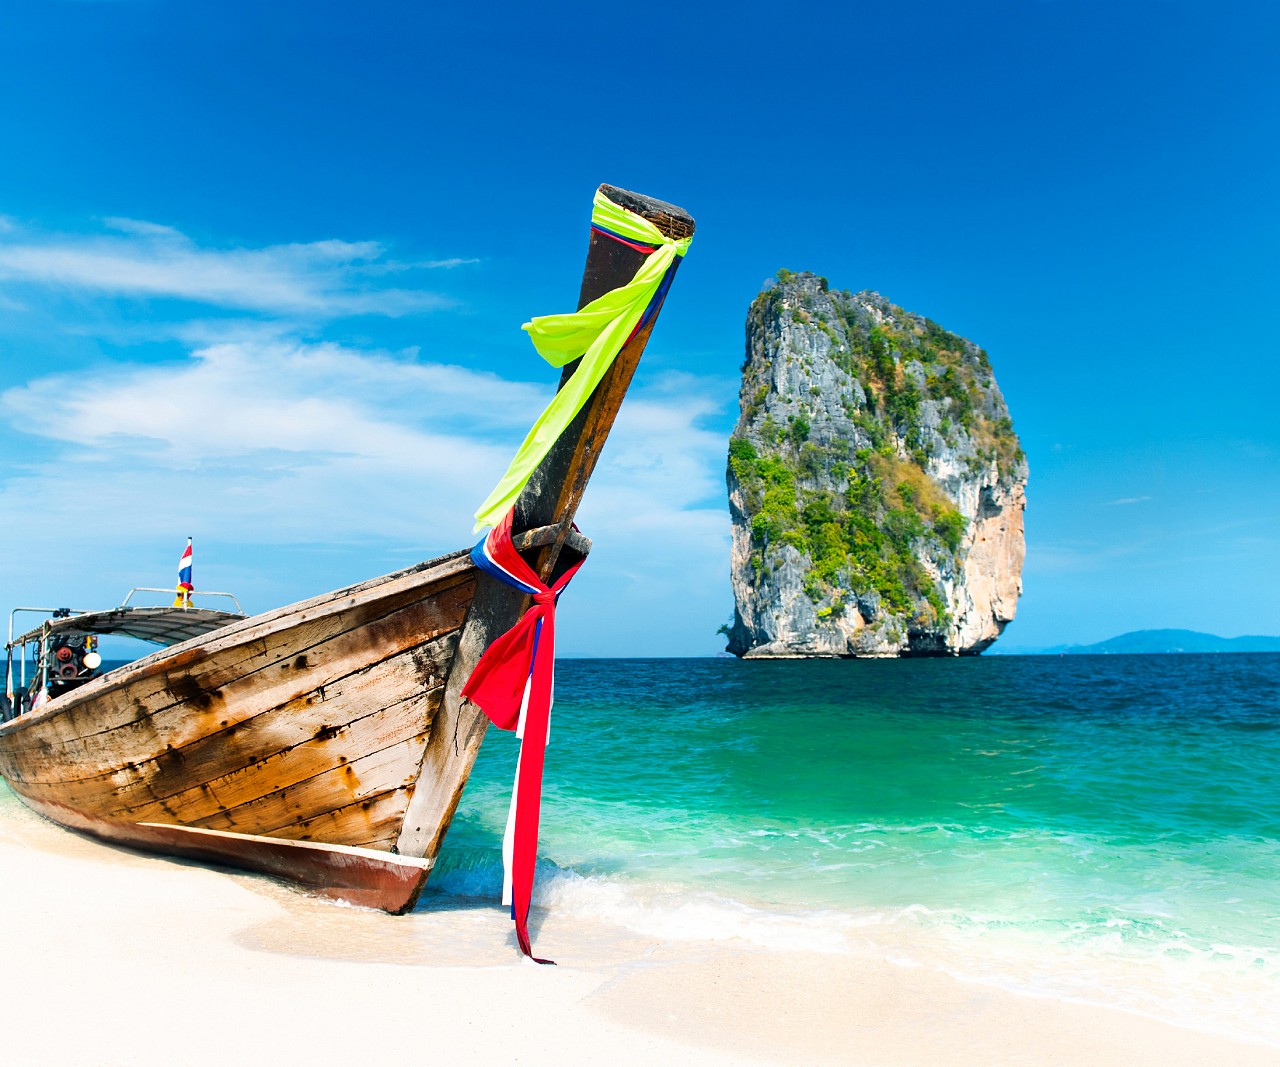 Du lịch Thái Lan| Tour Thái Lan|Tour Bangkok| Du lịch Bangkok|Du lịch  Pattaya| Tour Pattaya|Tour đảo Coral| Đảo Coral